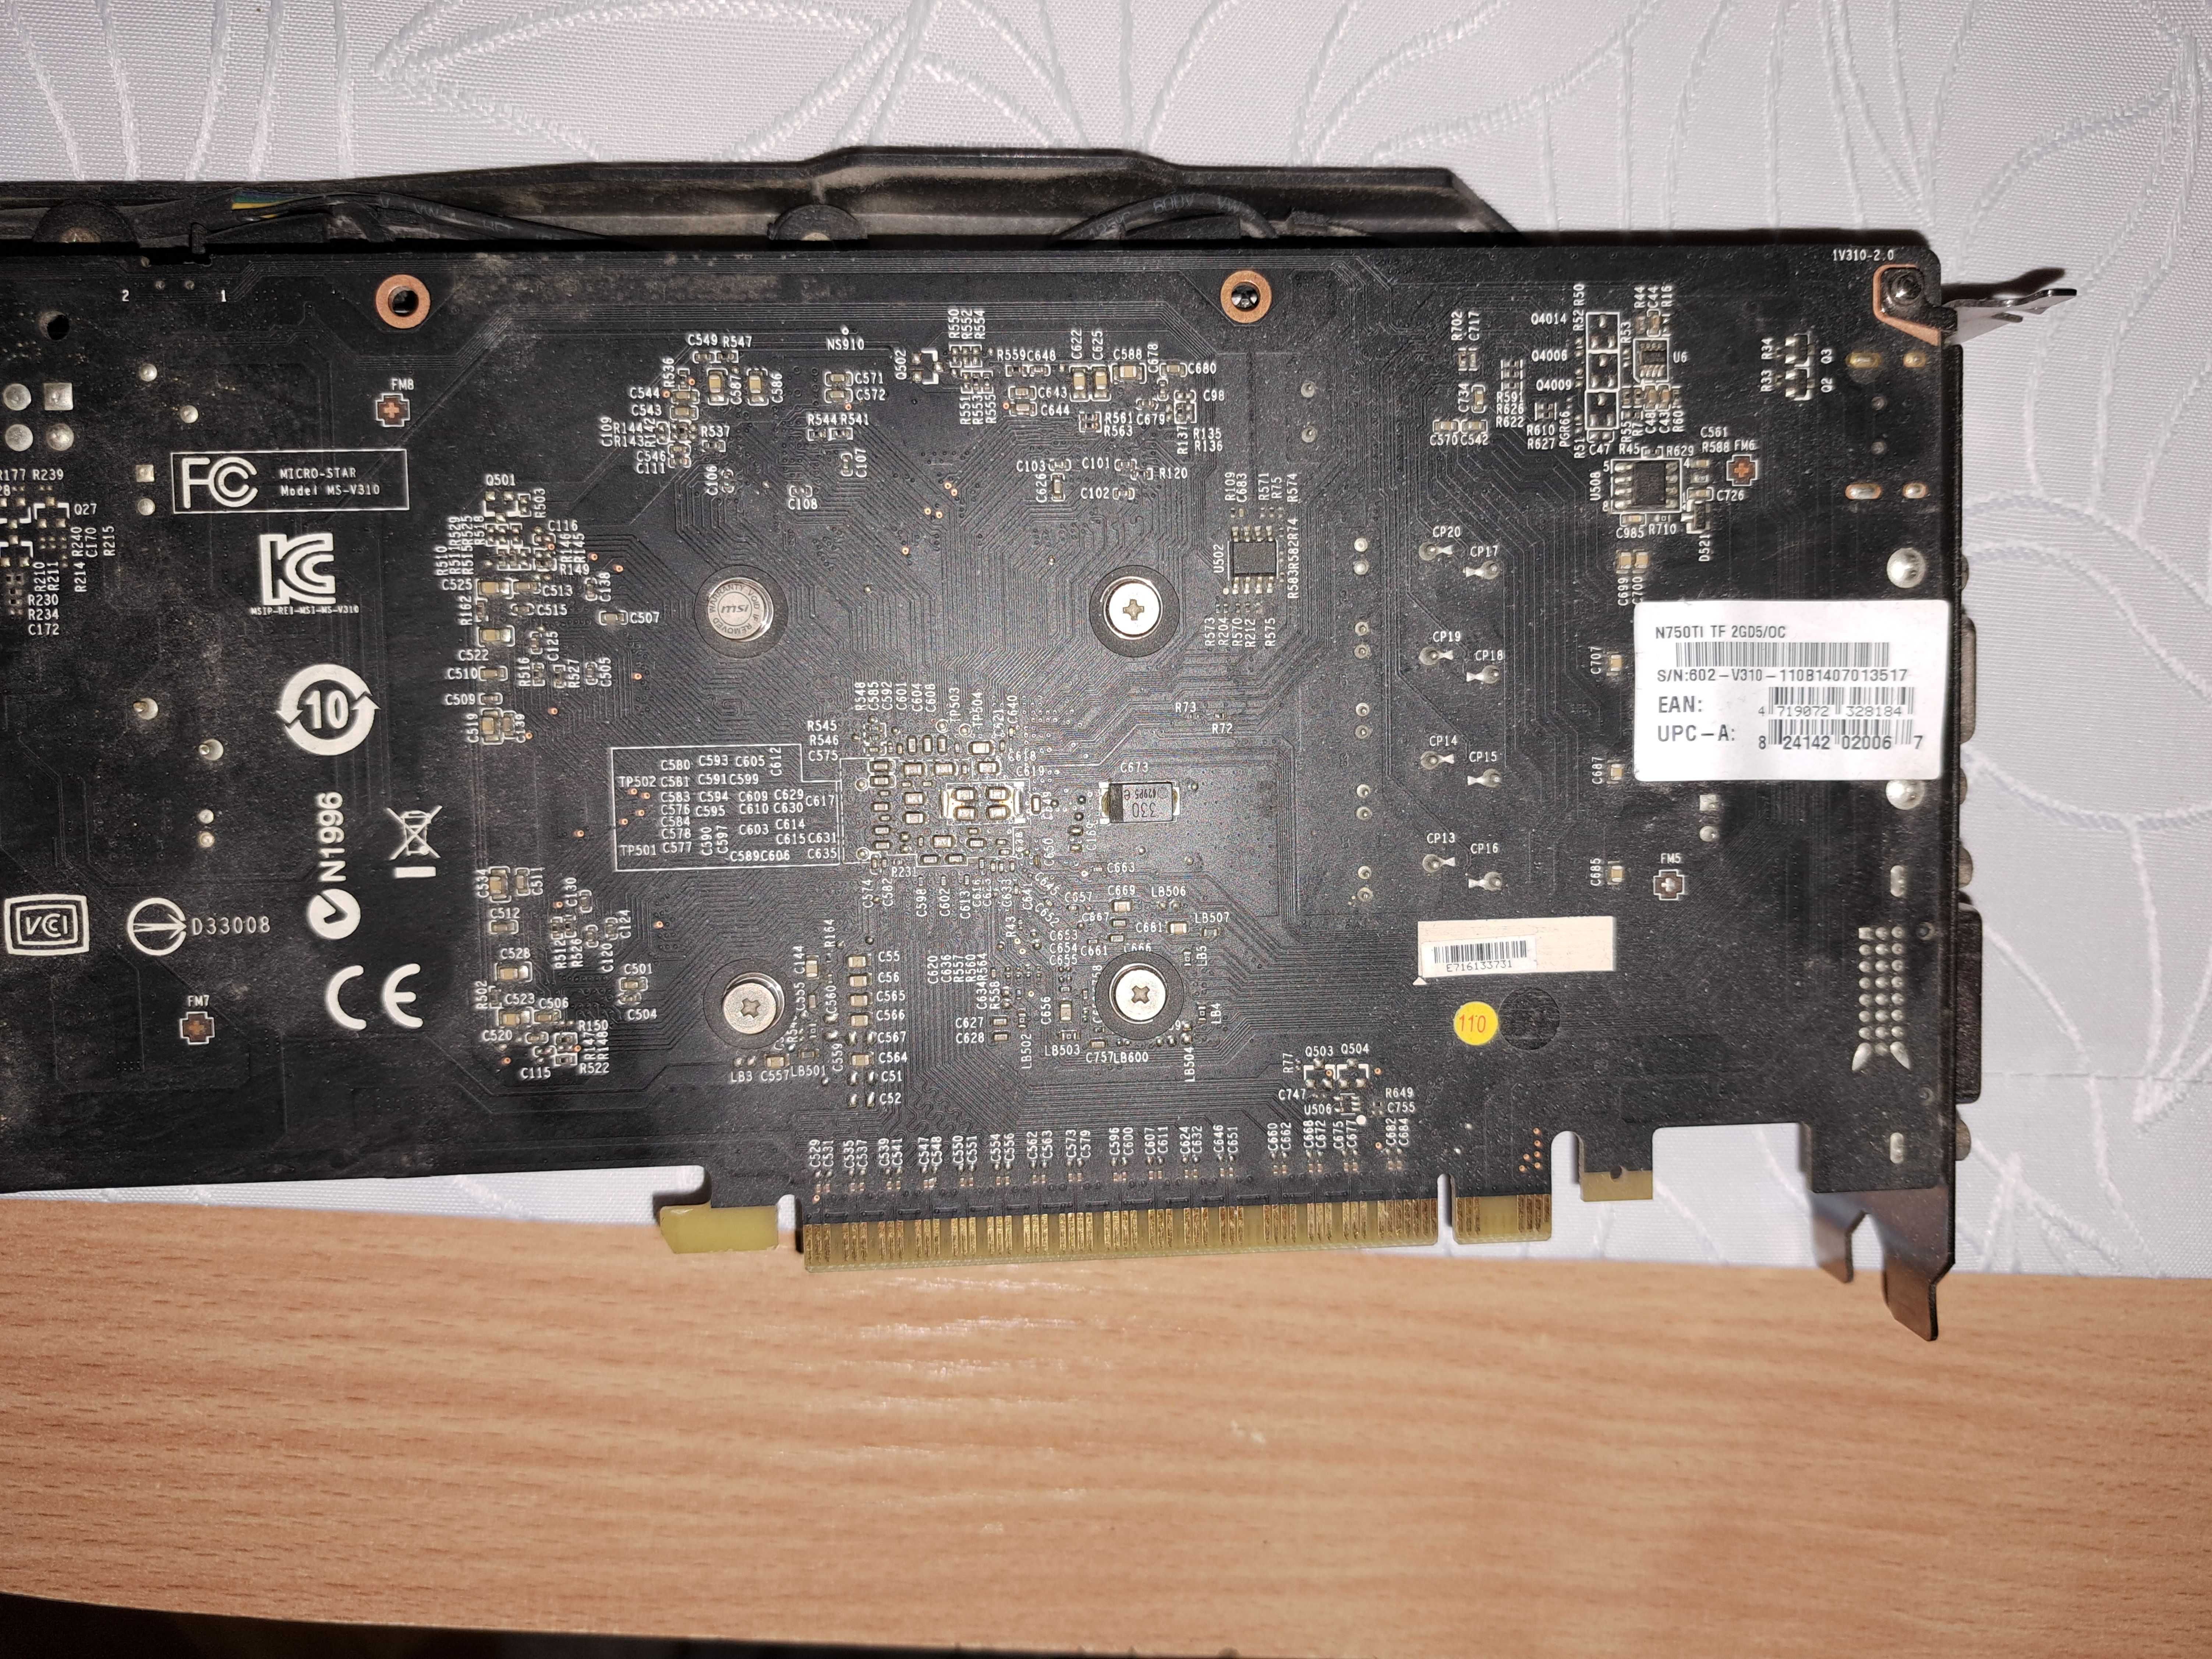 MSI TWIN FROZR Gaming Geforce GTX 750Ti